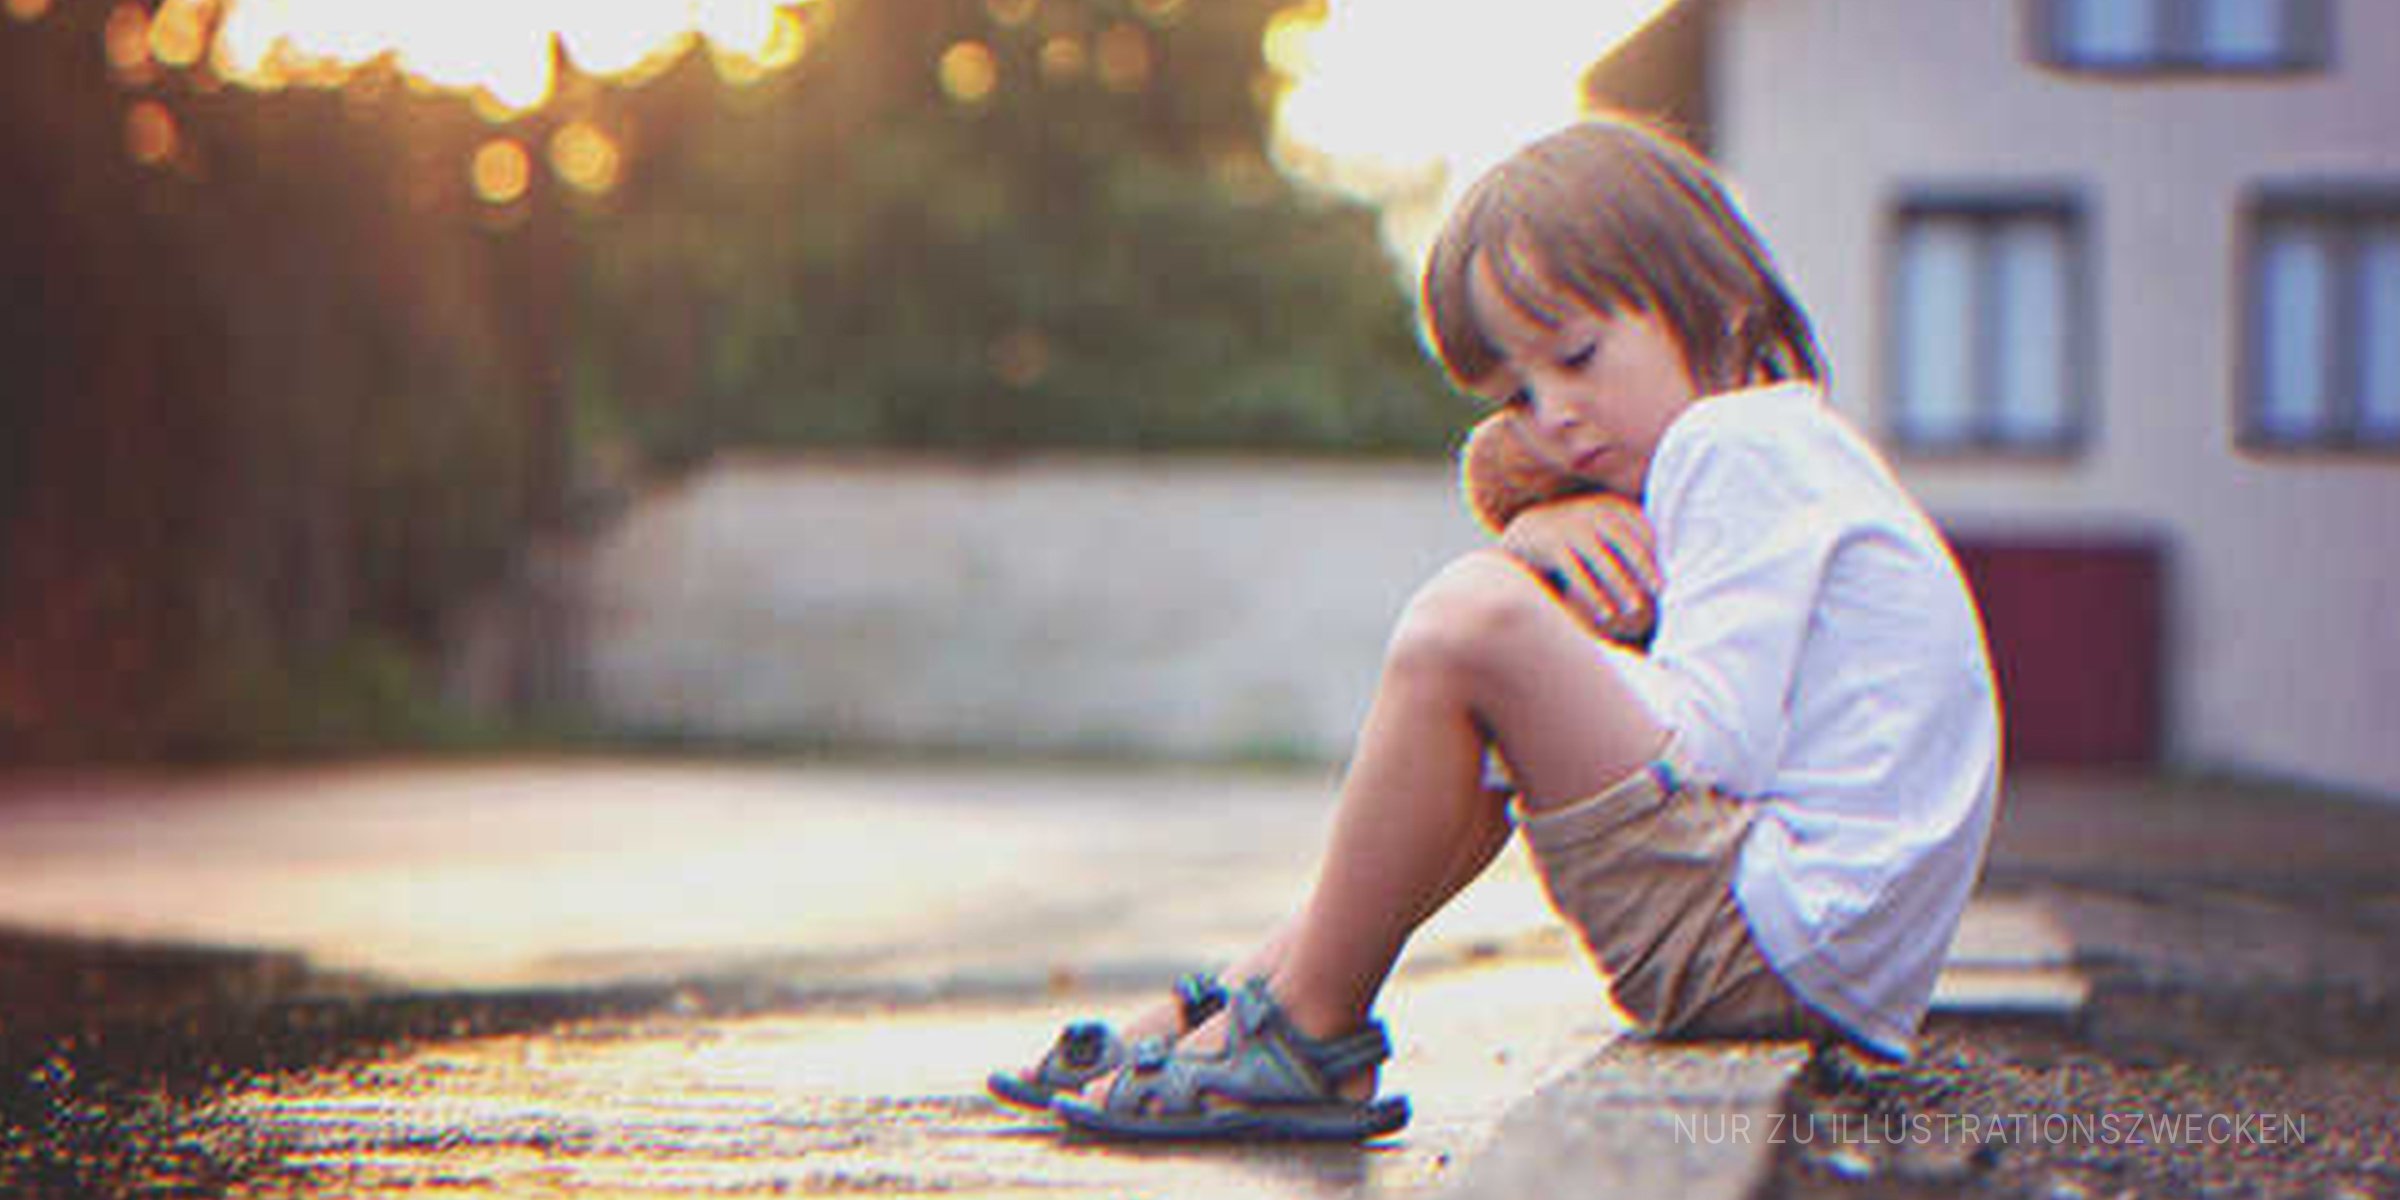 Ein trauriger Junge auf einem Bürgersteig. | Quelle: Shutterstock